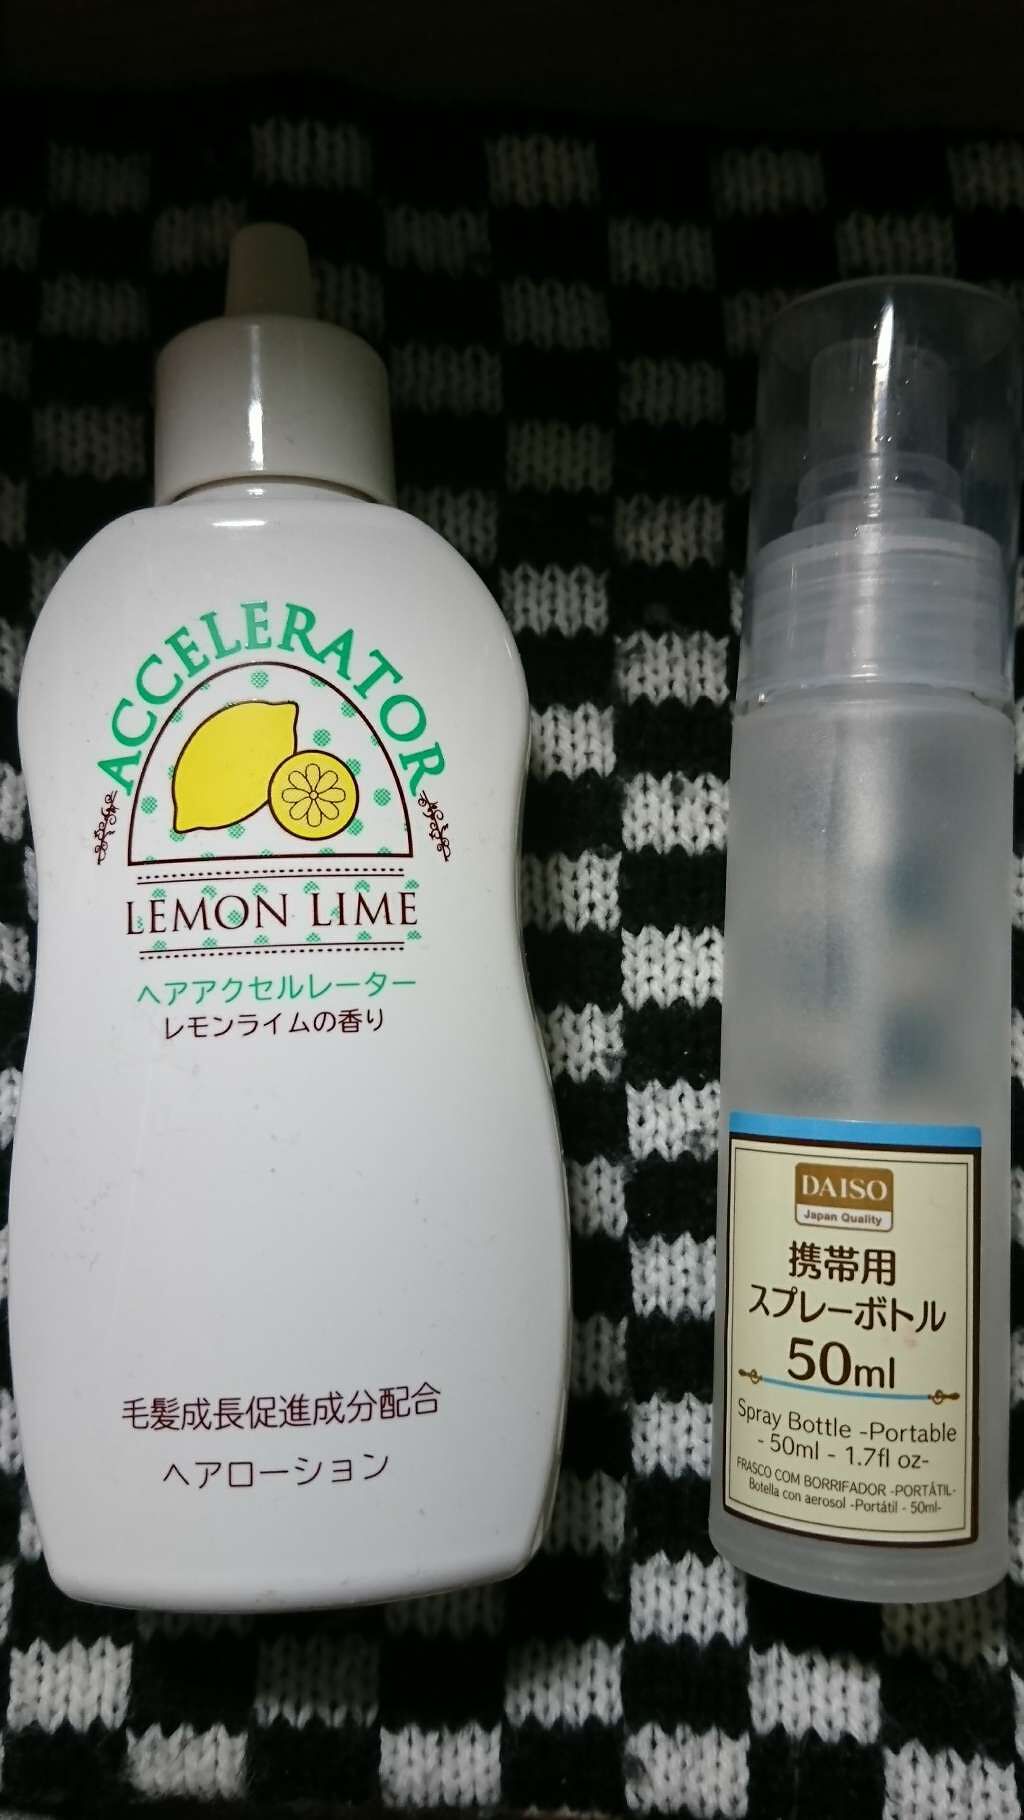 ヘアアクセルレーター レモンライムの香り 加美乃素本舗の口コミ 髪